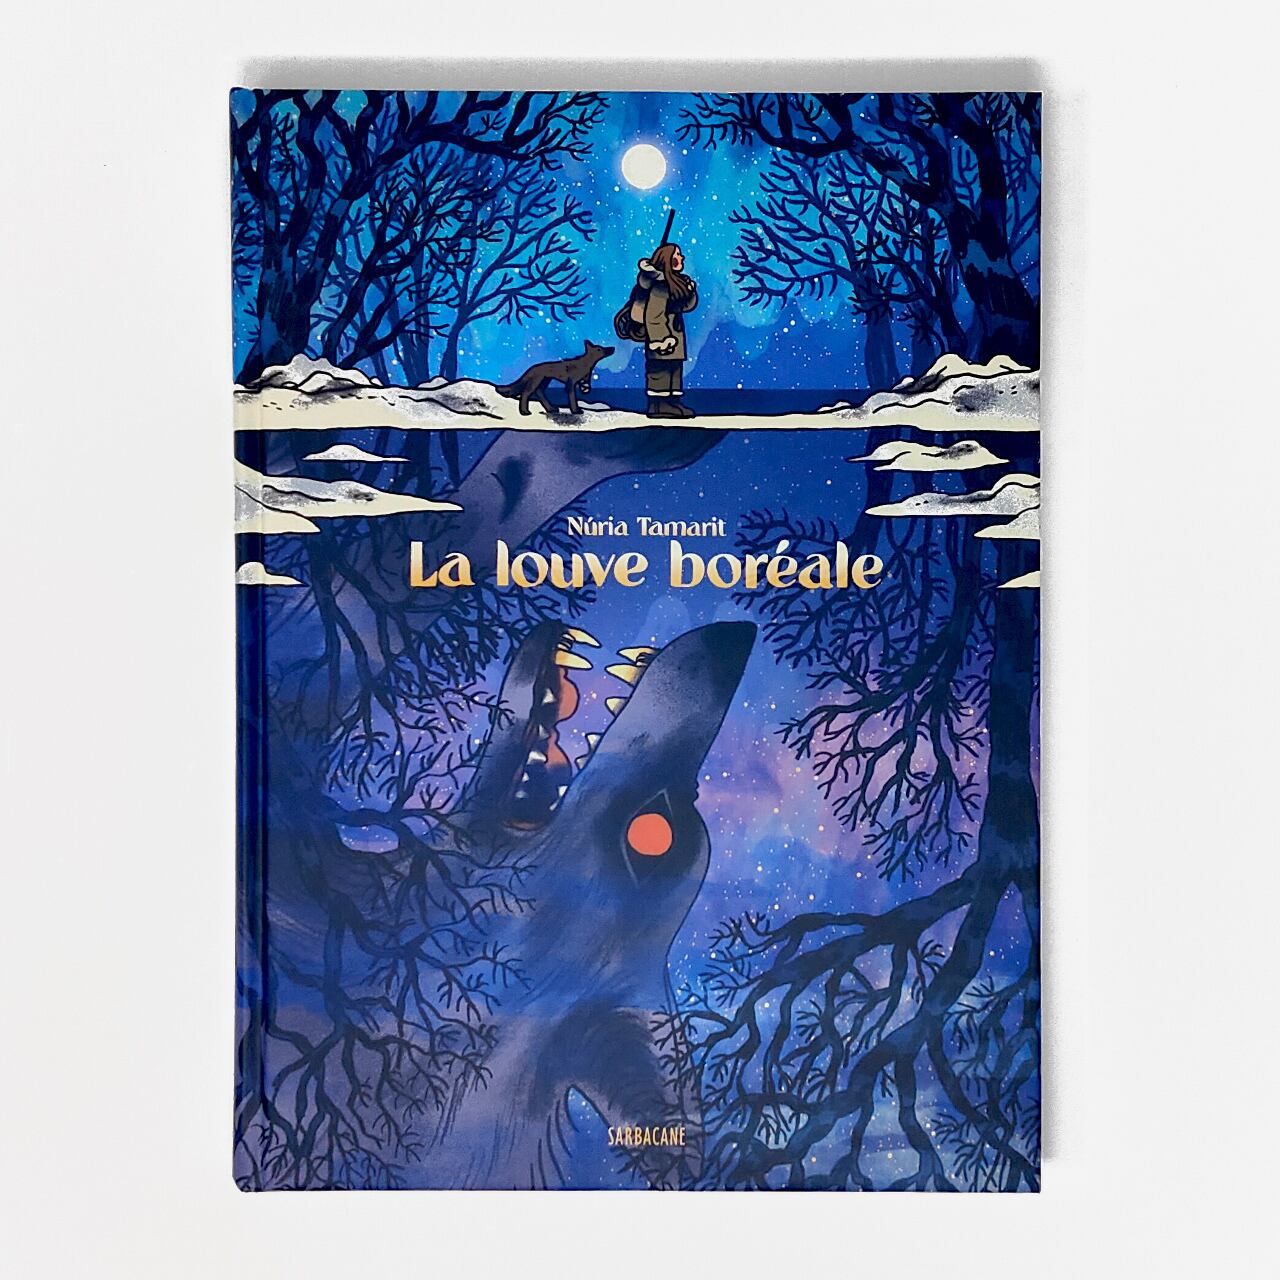 バンドデシネ「La louve boréale 」BD作家Nuria Tamarit